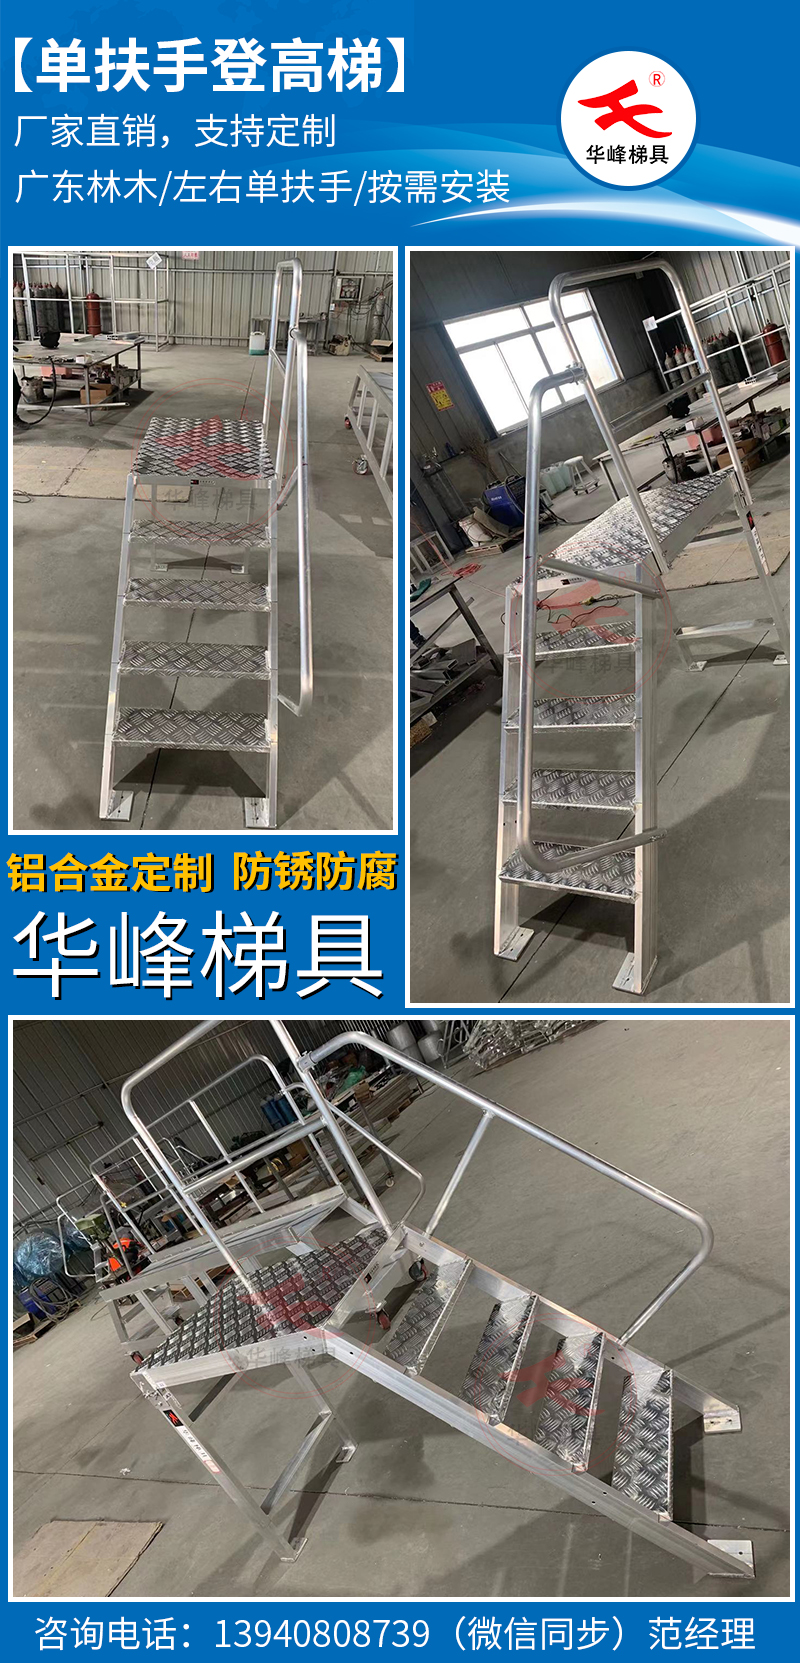 广东林木客户定制单扶手铝合金登高梯